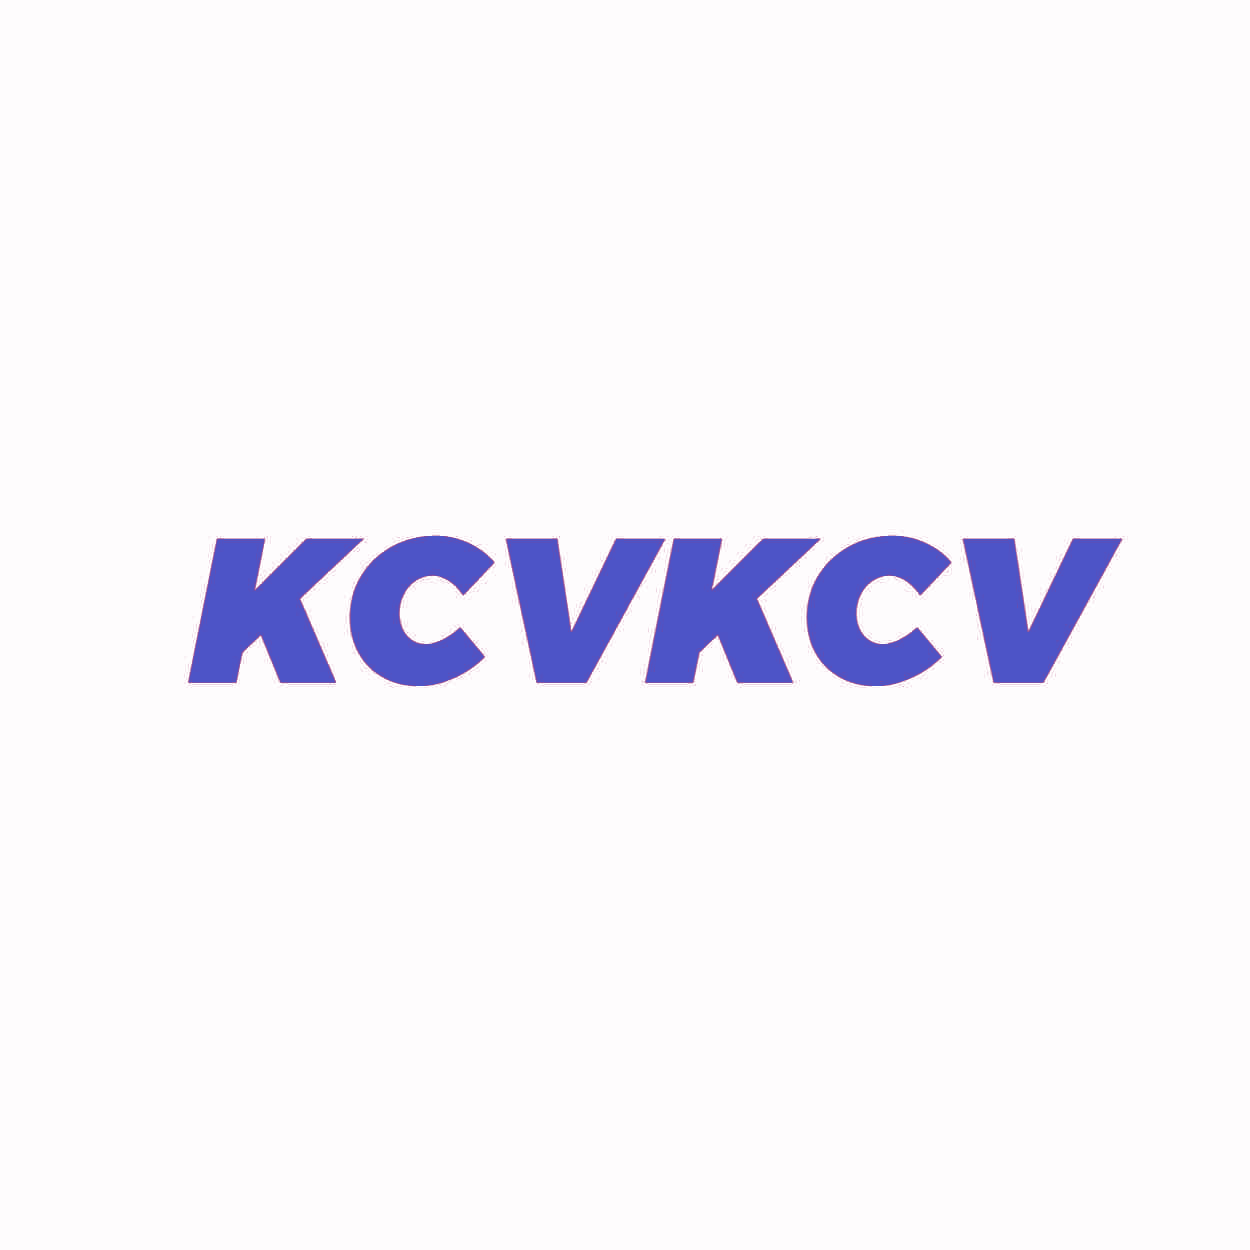 KCVKCV